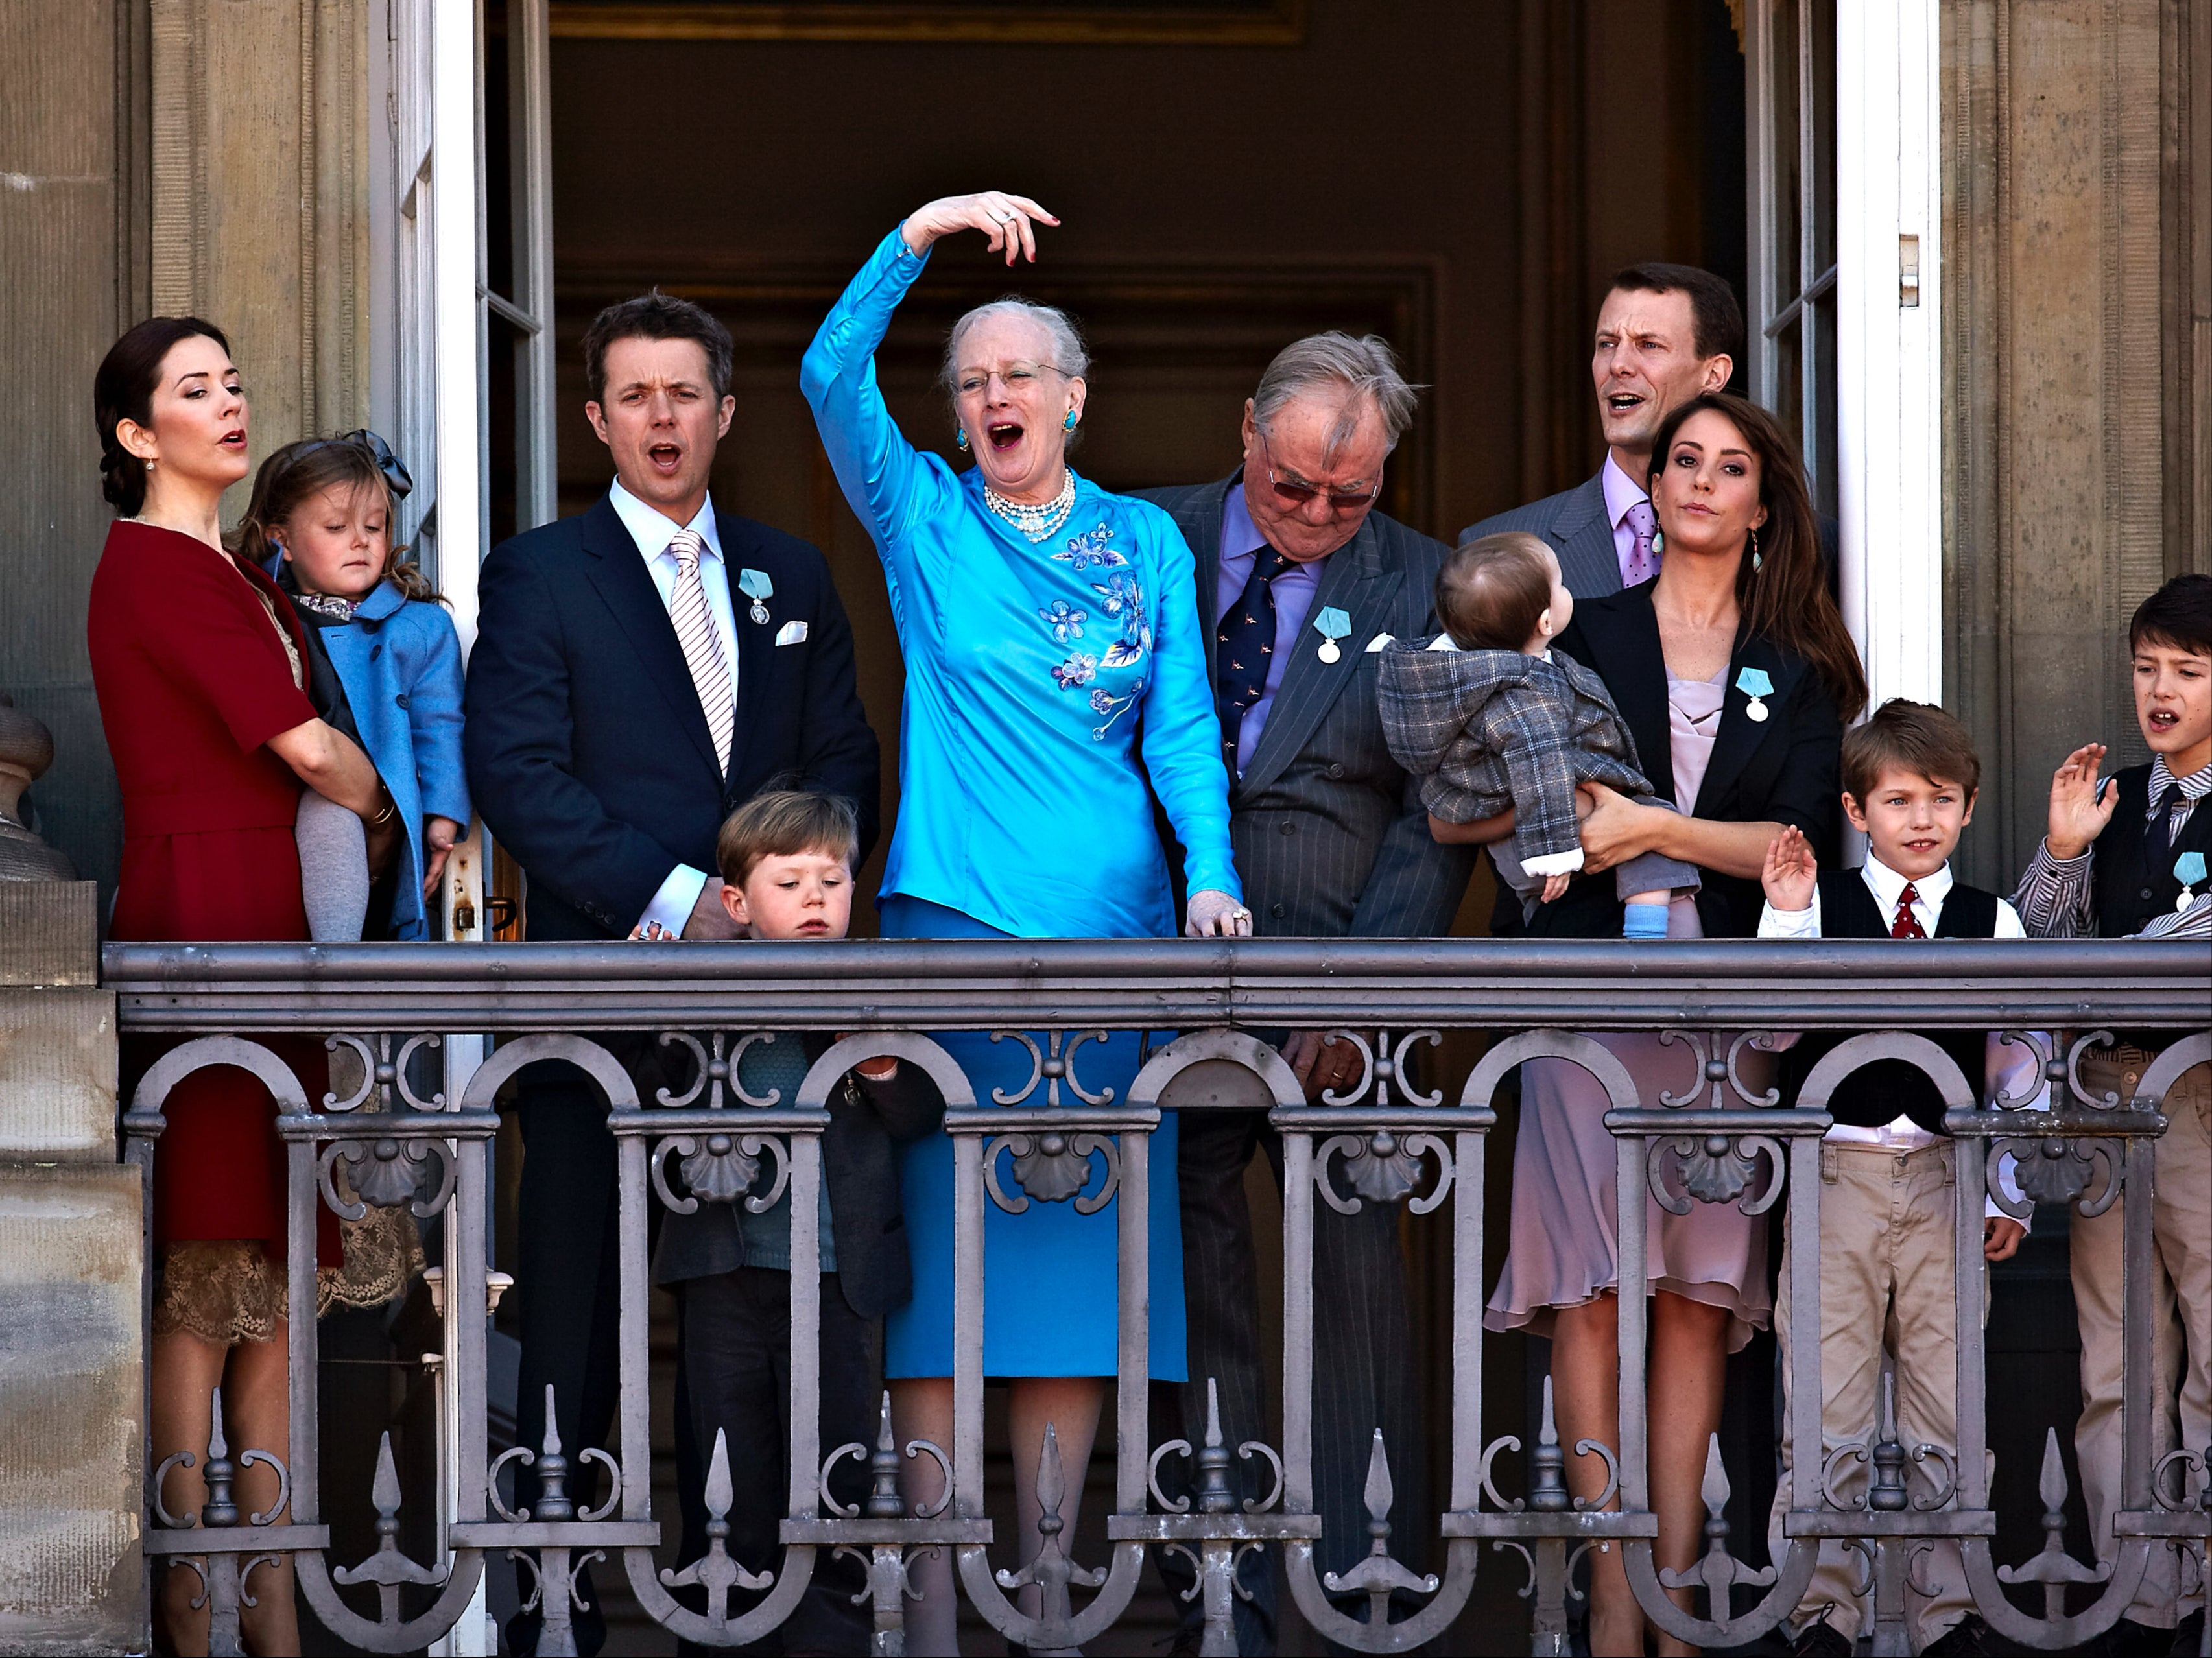 La familia real danesa está dando mucho de qué hablar